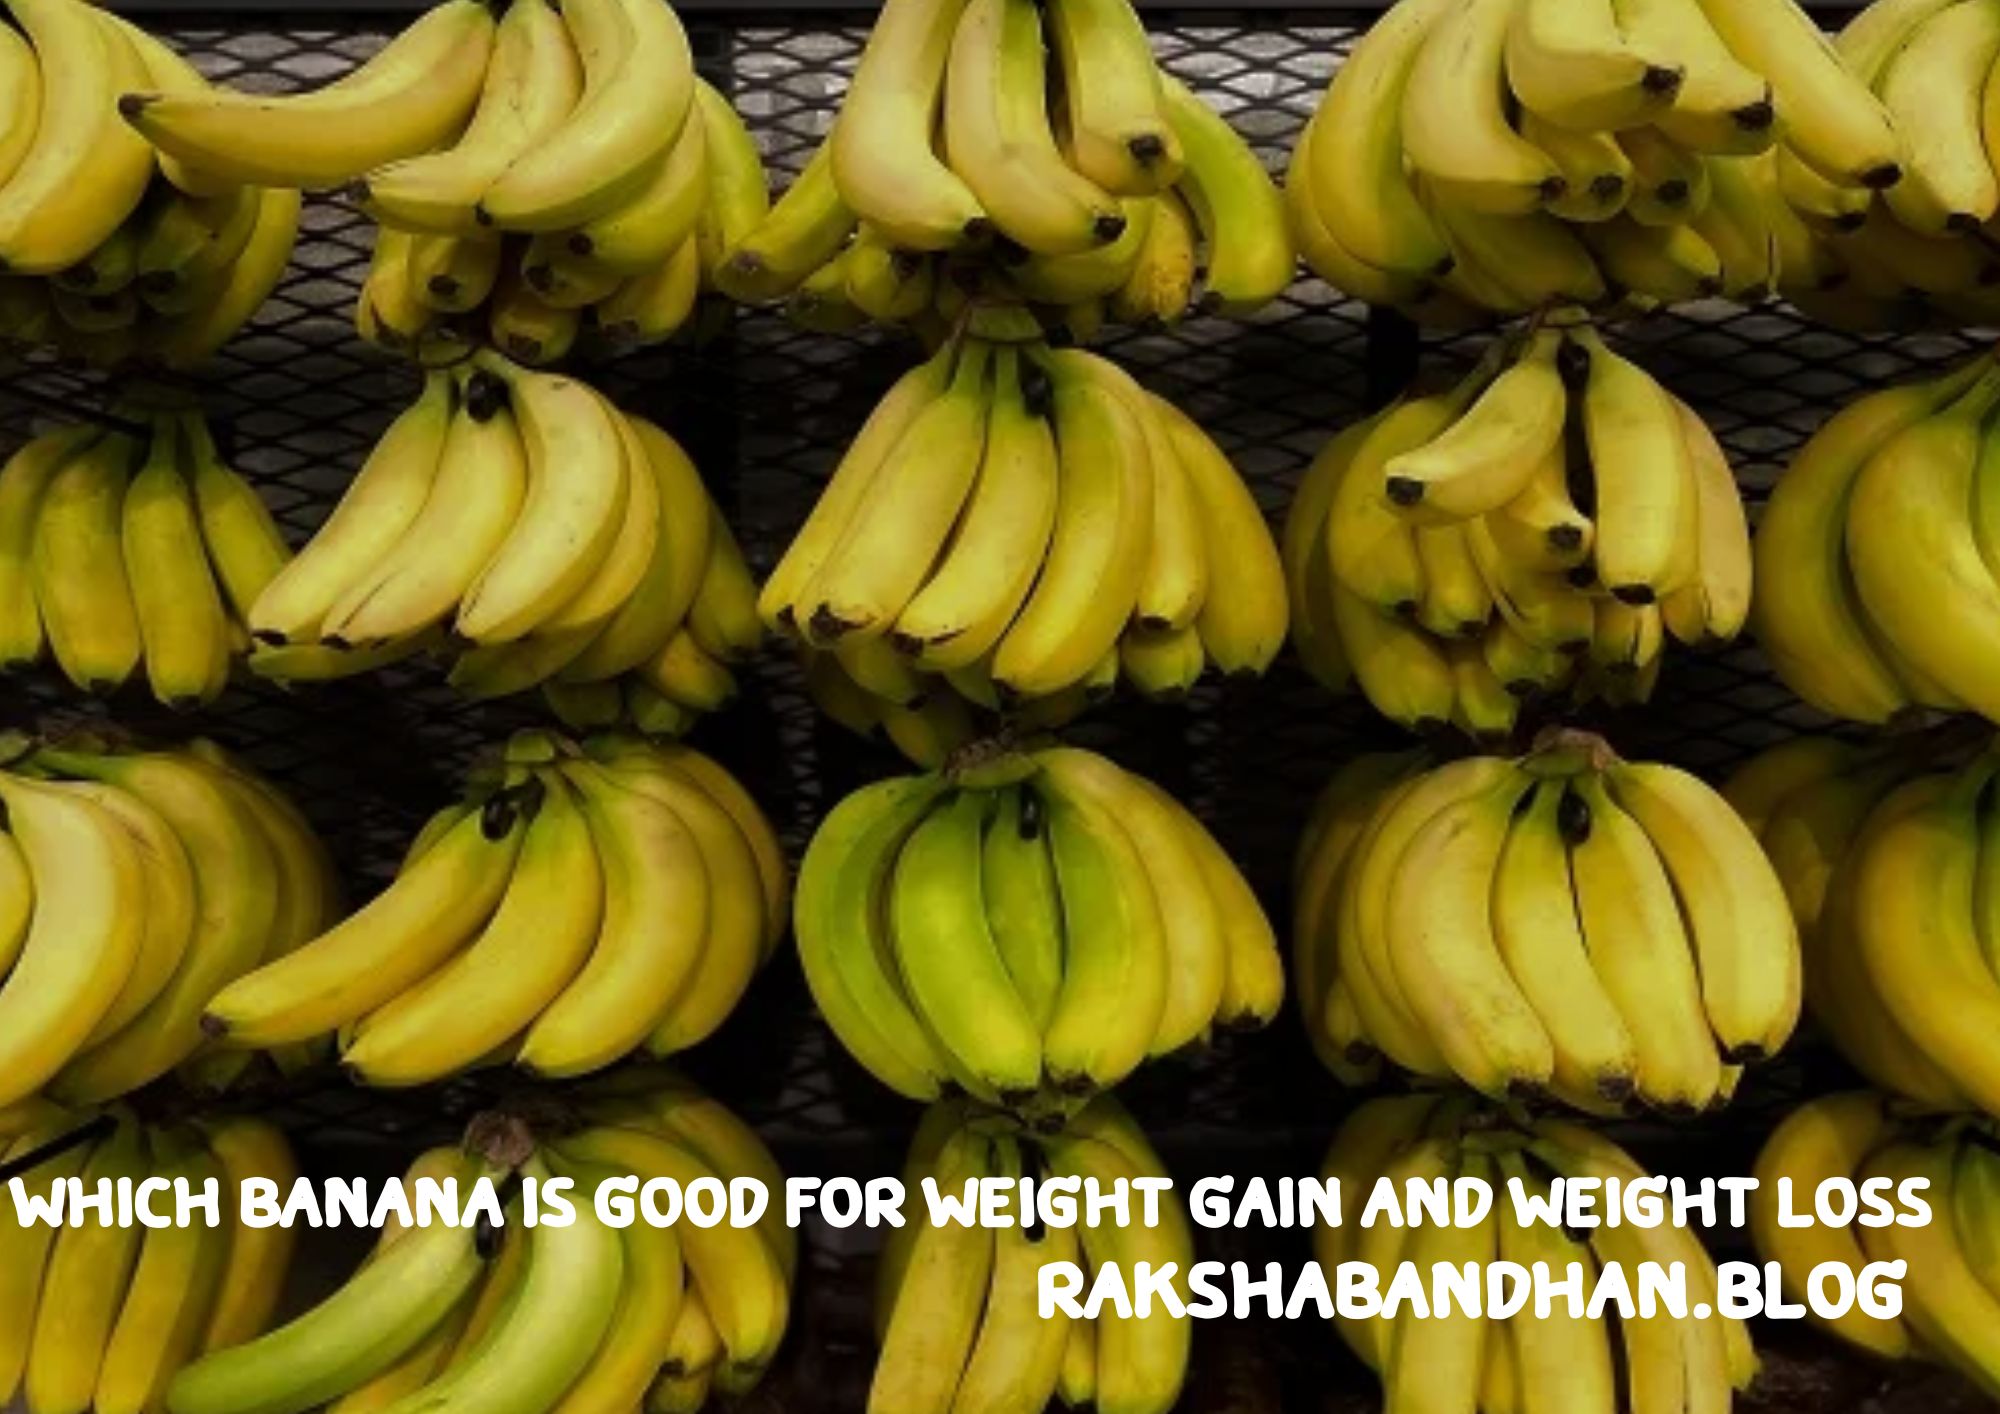 वजन बढ़ाने के लिए केला कब खाना चाहिए, वजन बढ़ाने के लिए दूध और केला कैसे खाएं